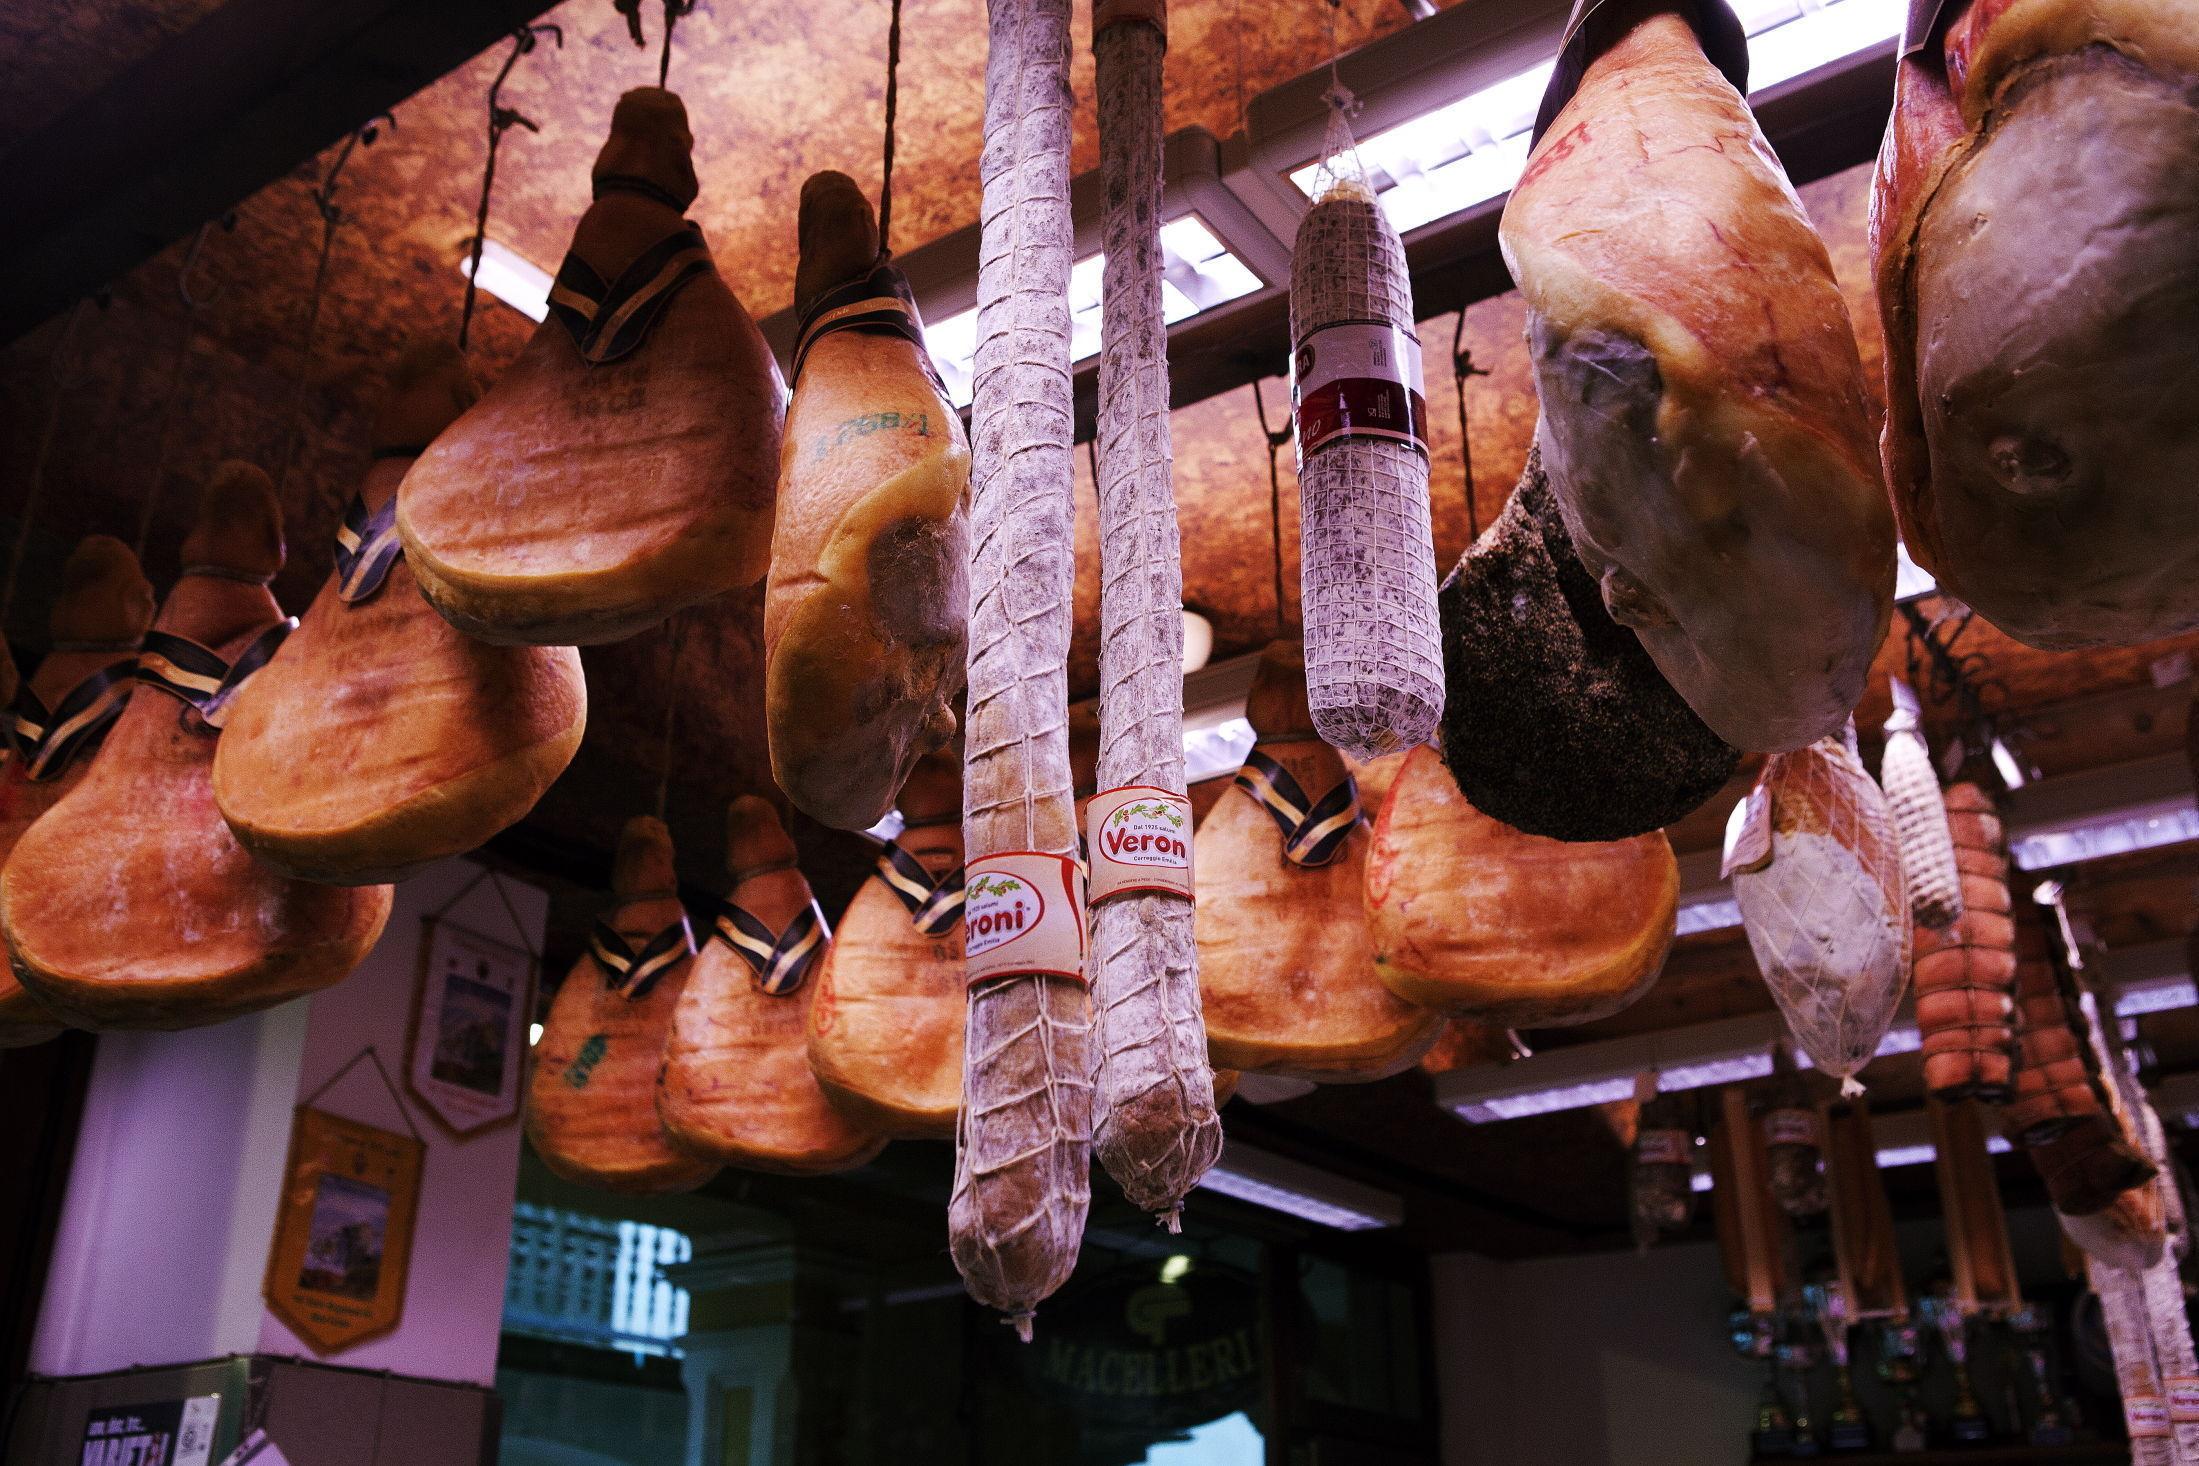 ITALIENSK: På de italienske markedene er det rikelig tilgang på ferske råvarer som spekeskinke. Skinker fra Italia har en moden smak som varer, ifølge skinkeekspert Per Berg. Foto: Magnar Kirknes/VG